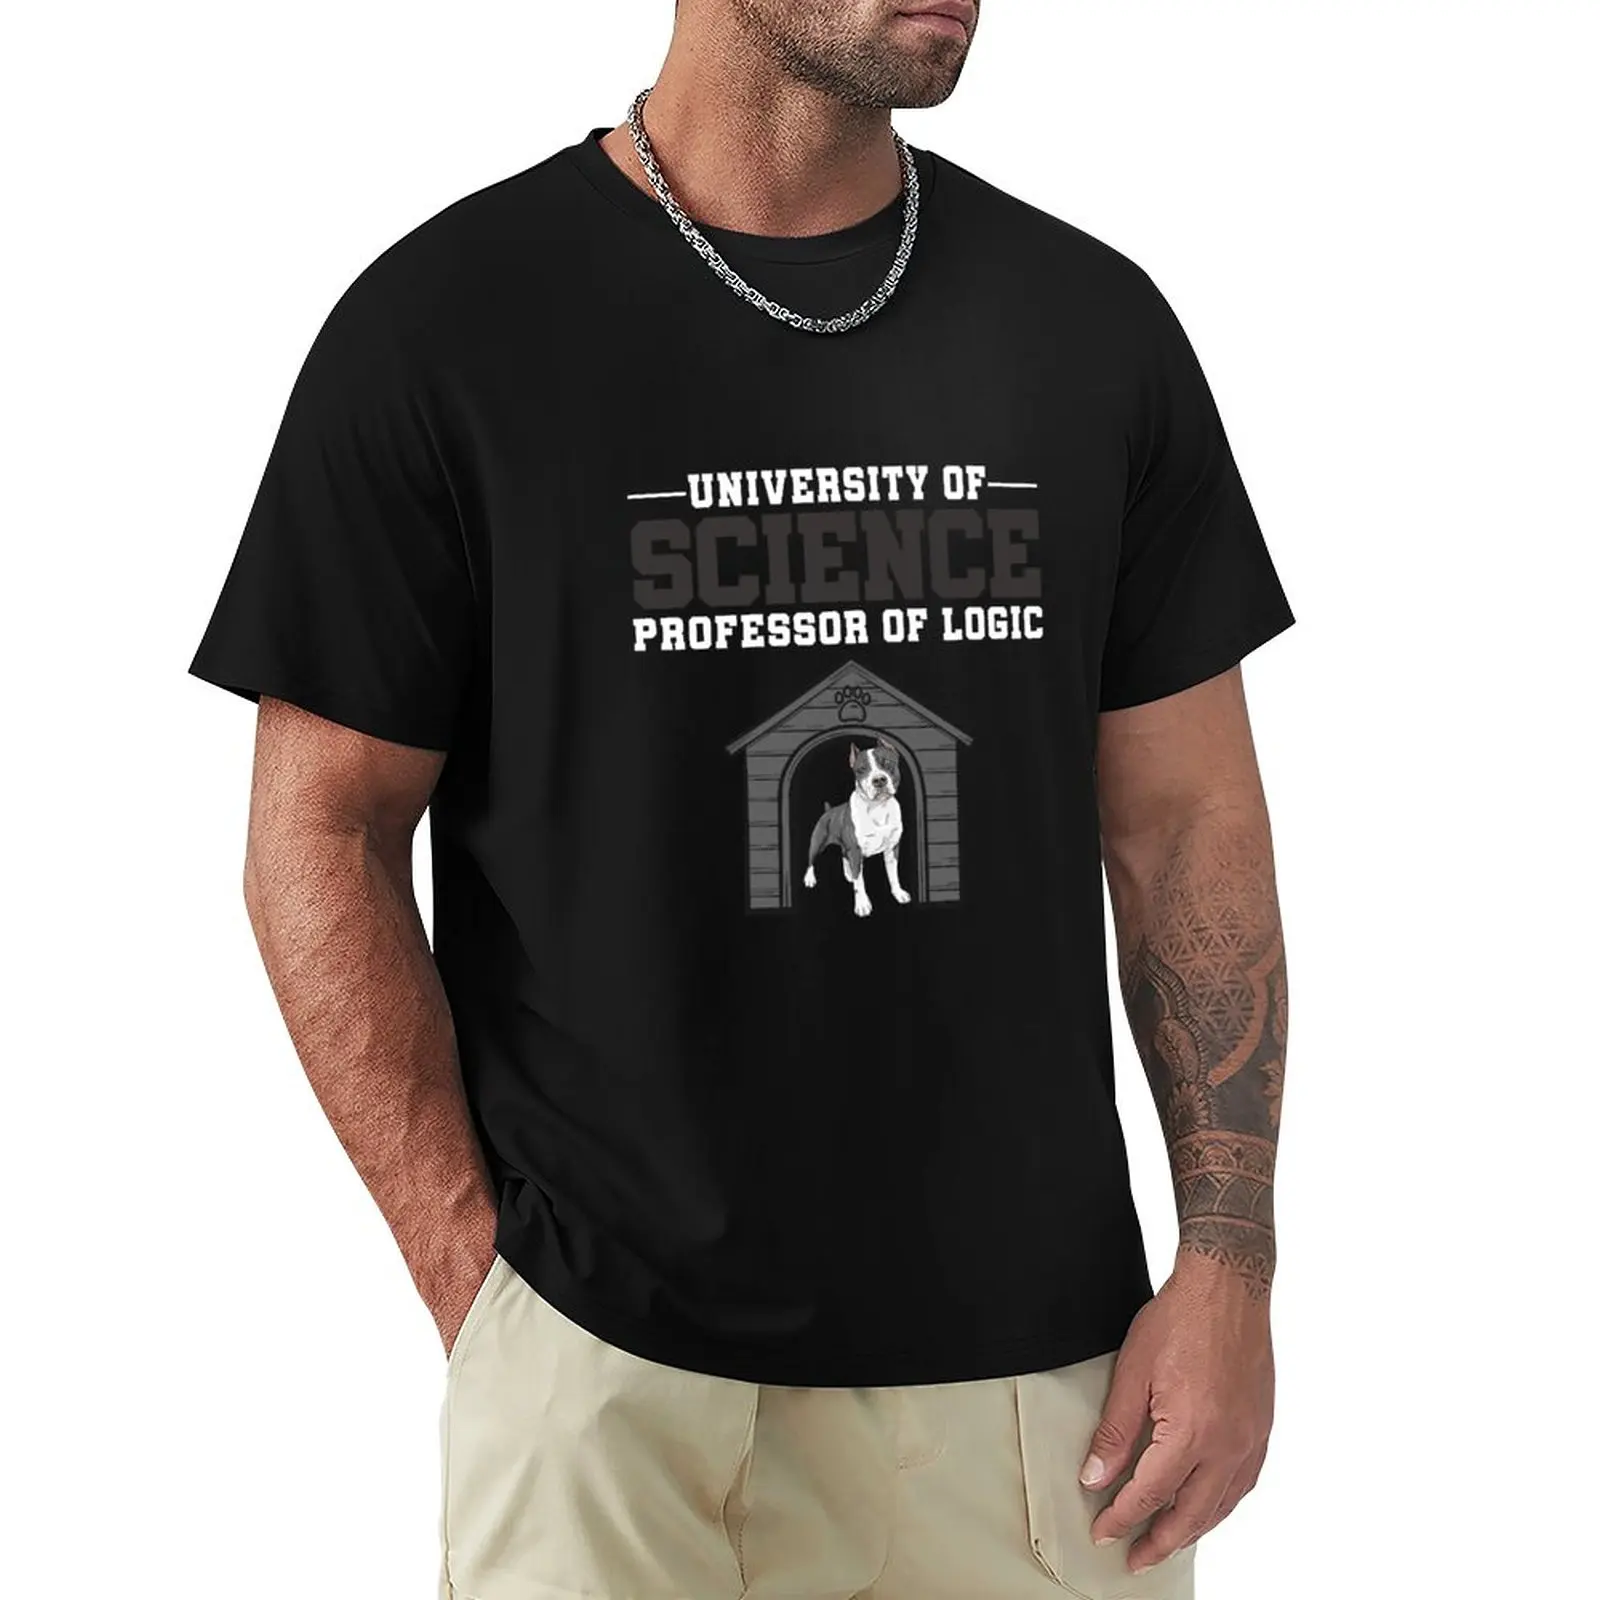 

Футболка университет науки, пустые футболки, футболки с круглым вырезом, смешная футболка, мужские футболки